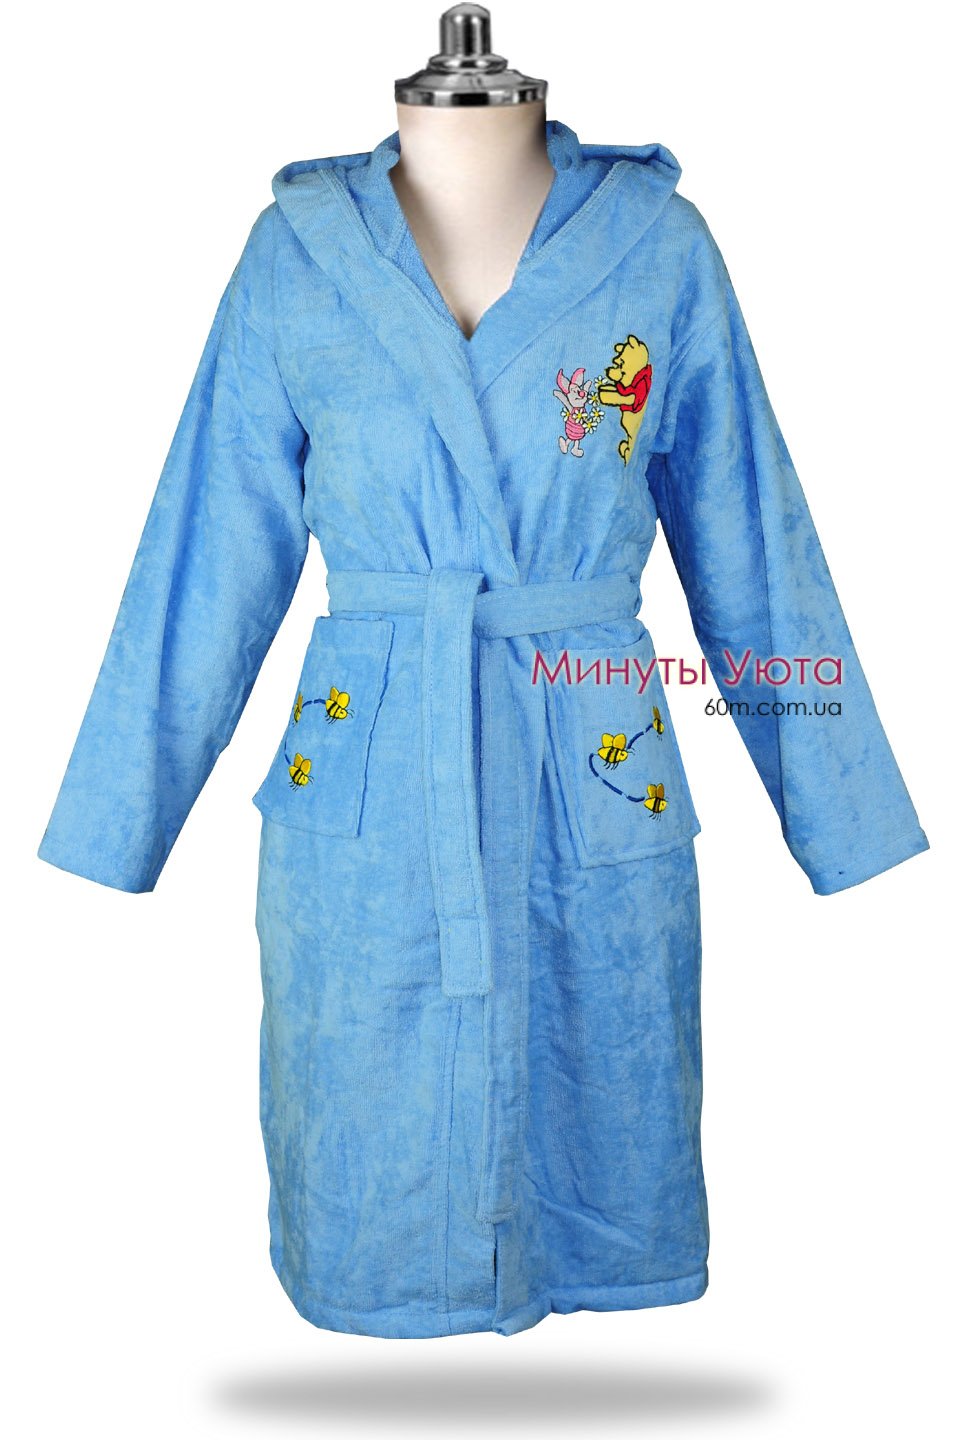 Хлопковый халат  в голубом цвете с вышивкой на карманах 